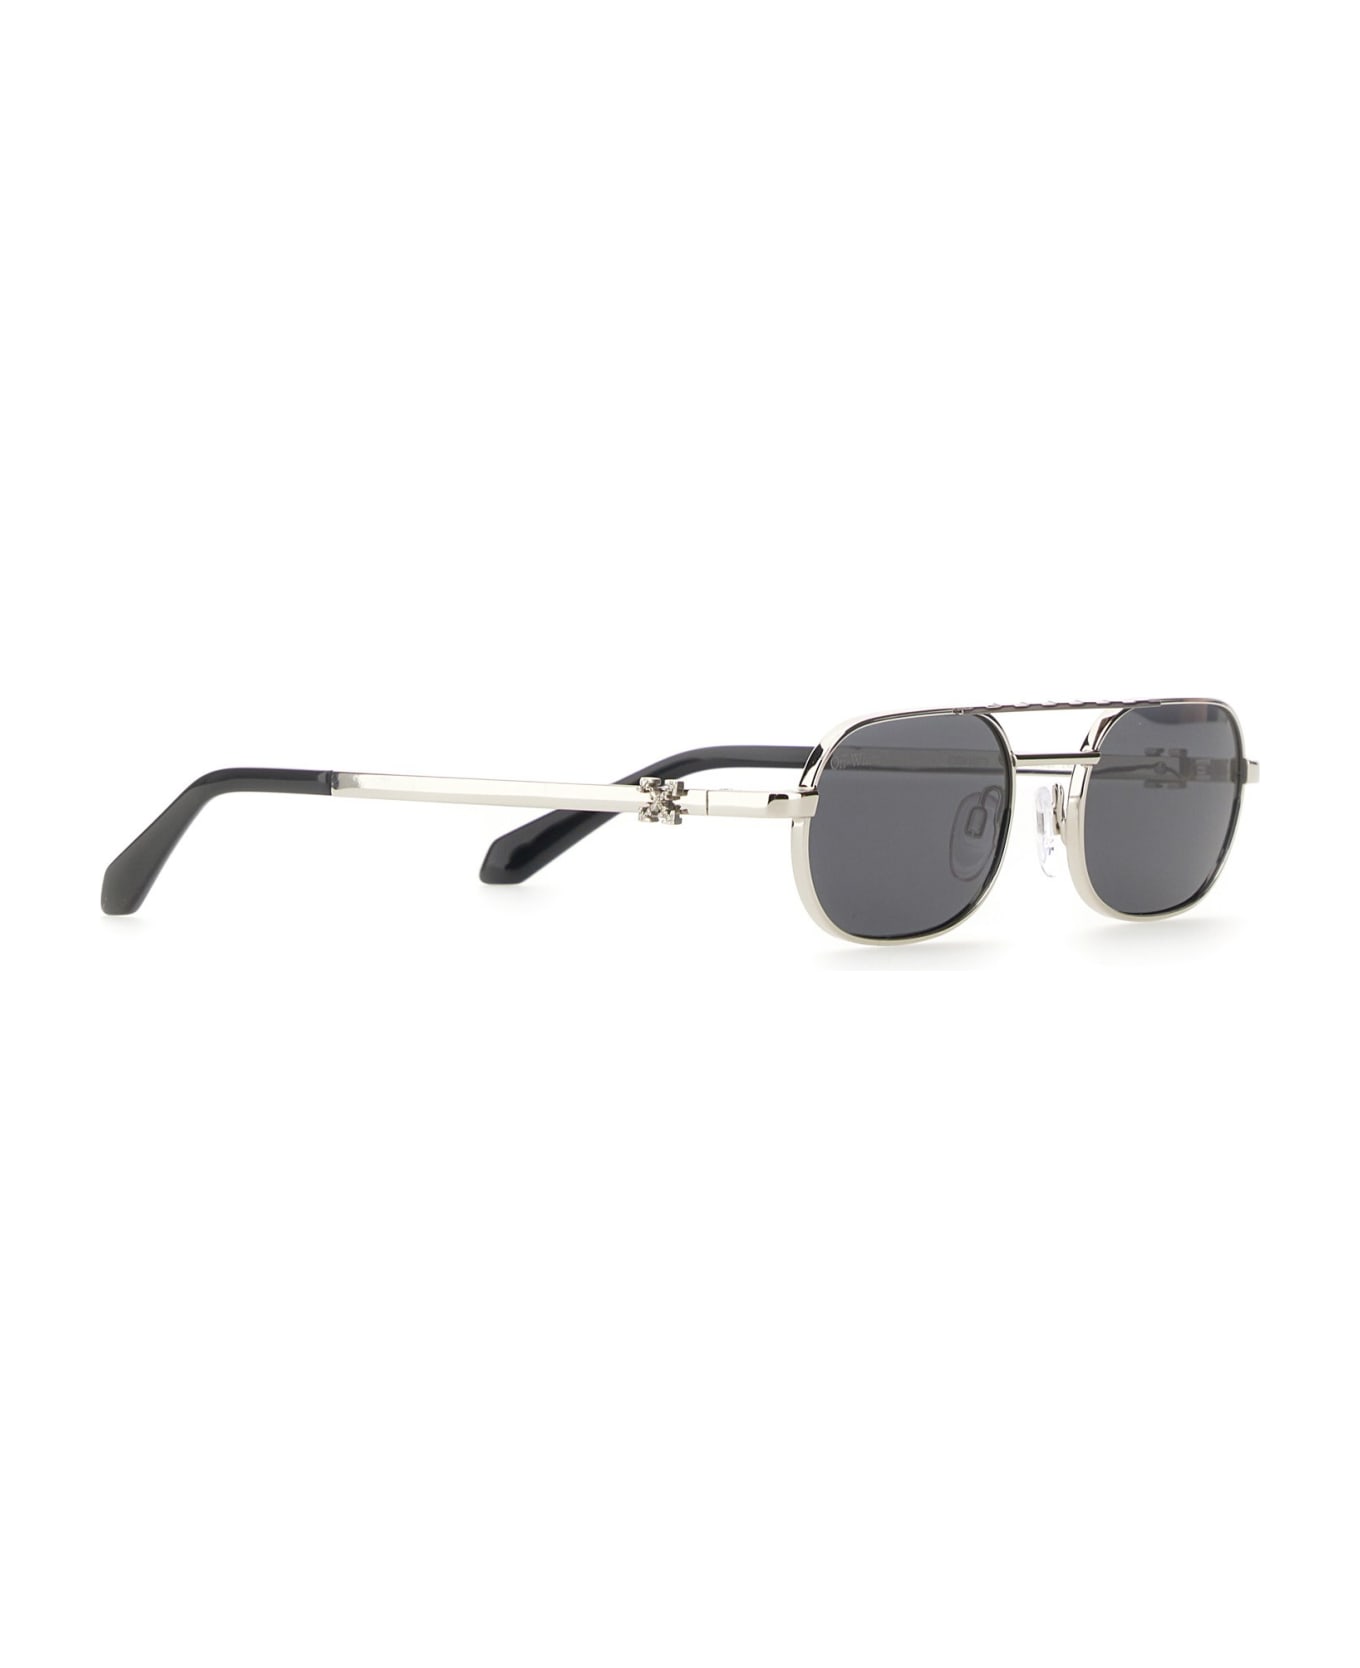 Off-White Baltimore Sunglasses - Argento